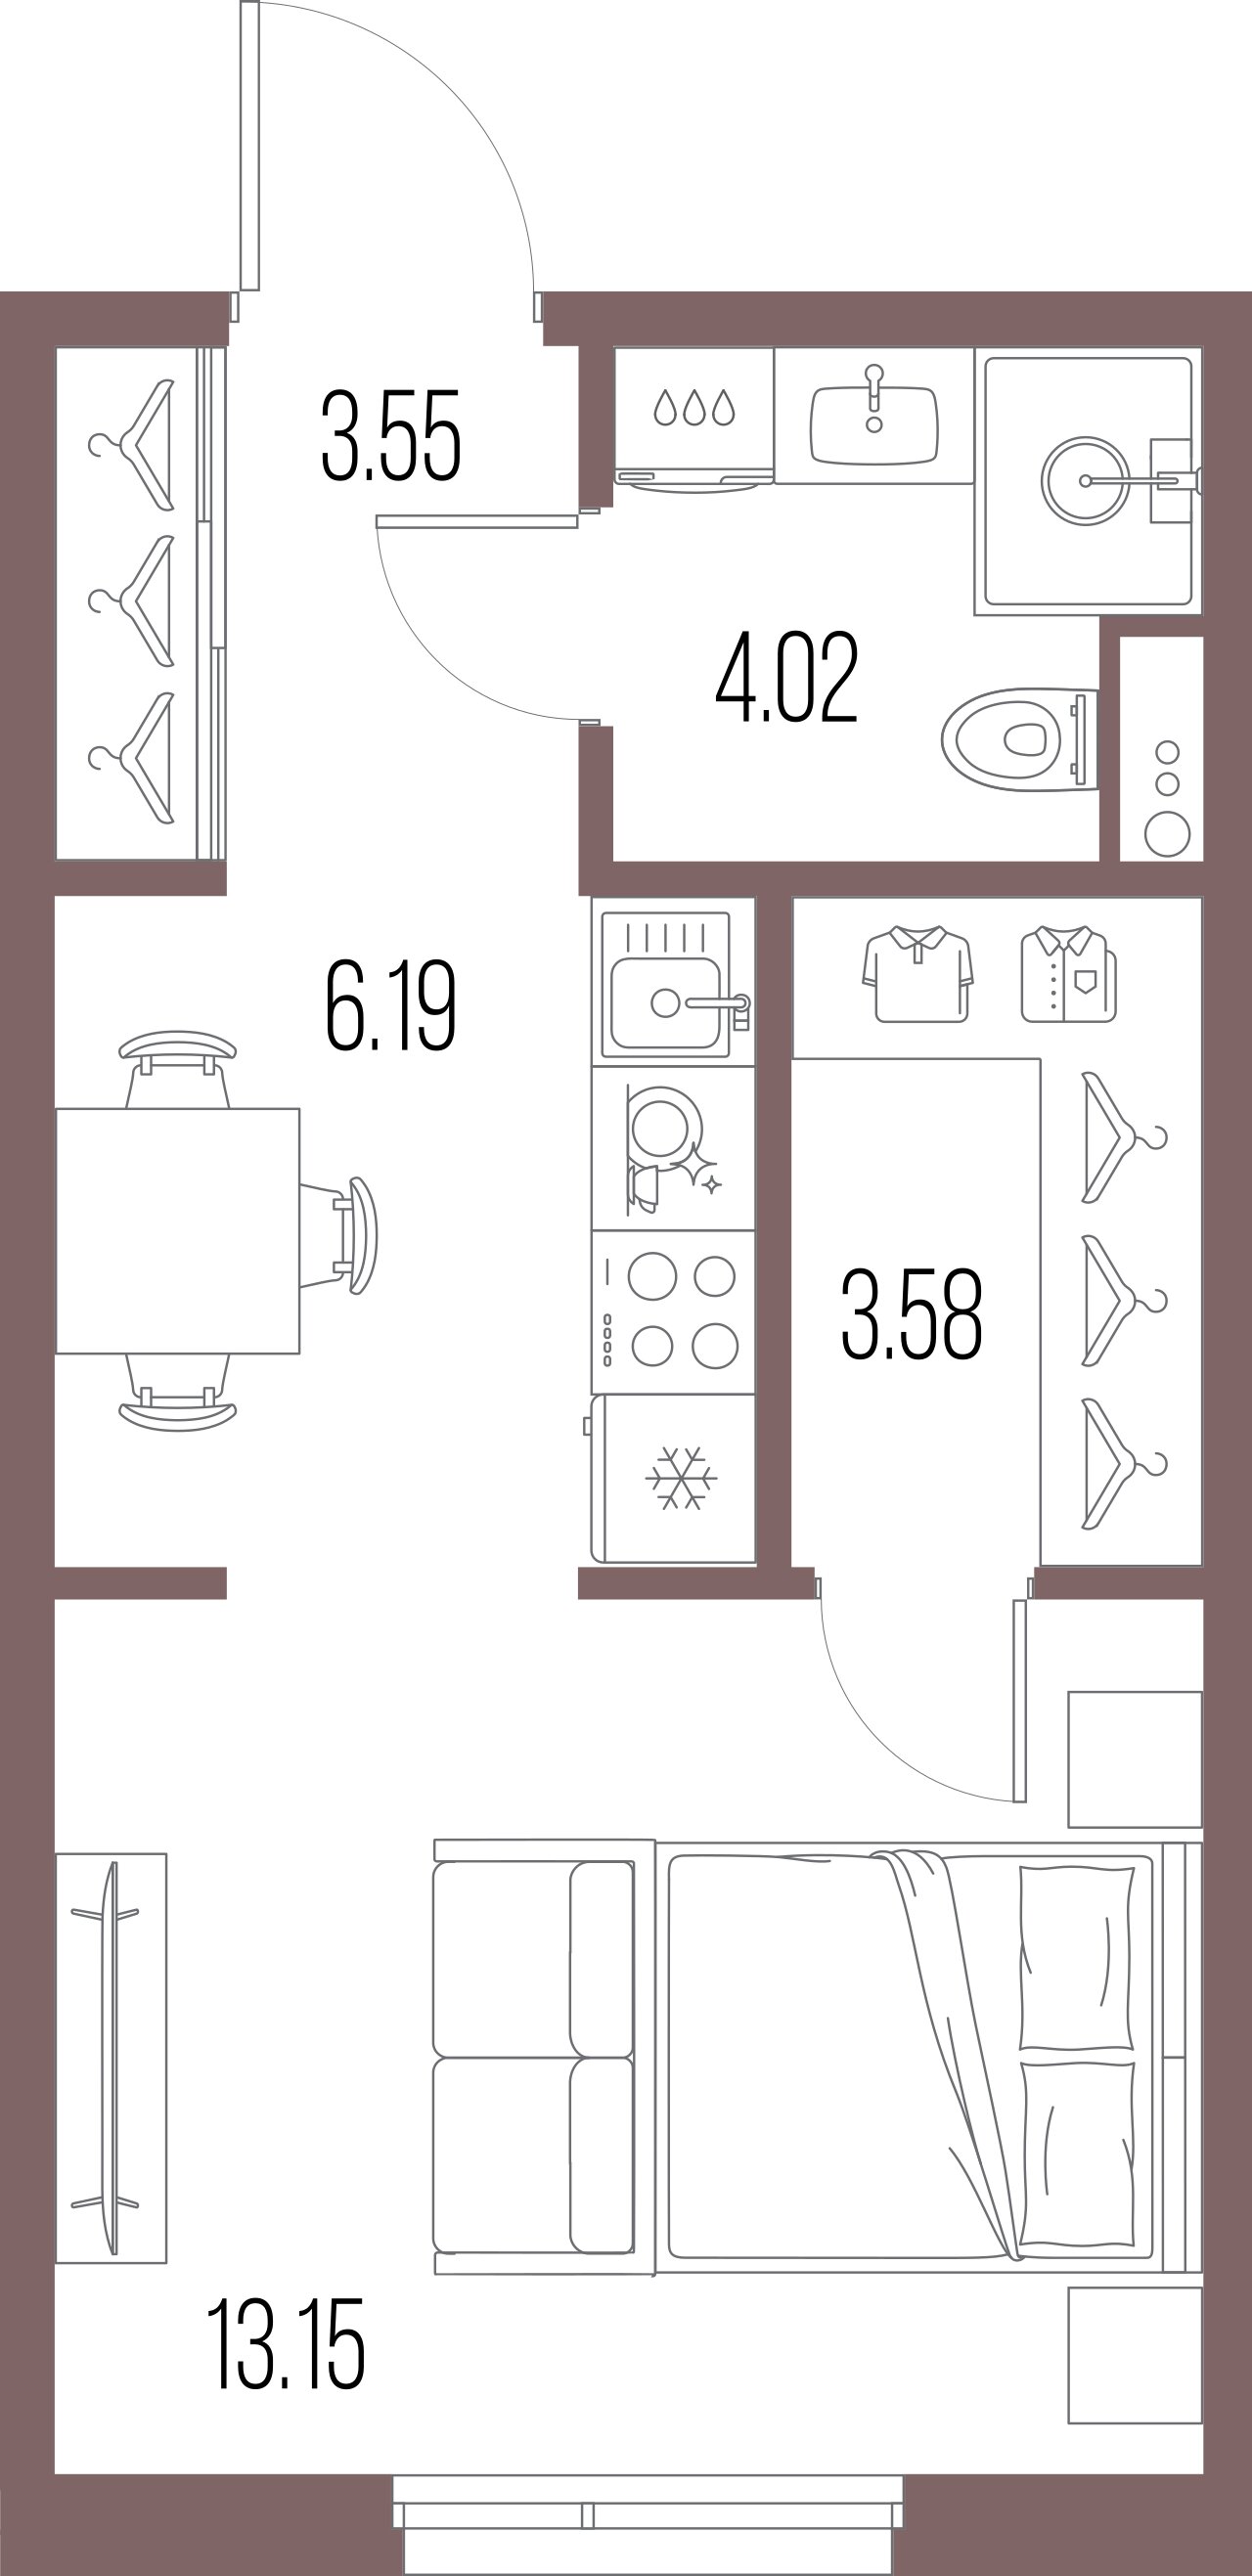 1-комнатная квартира  №151 в Legenda Васильевского: 30.49 м², этаж 10 - купить в Санкт-Петербурге